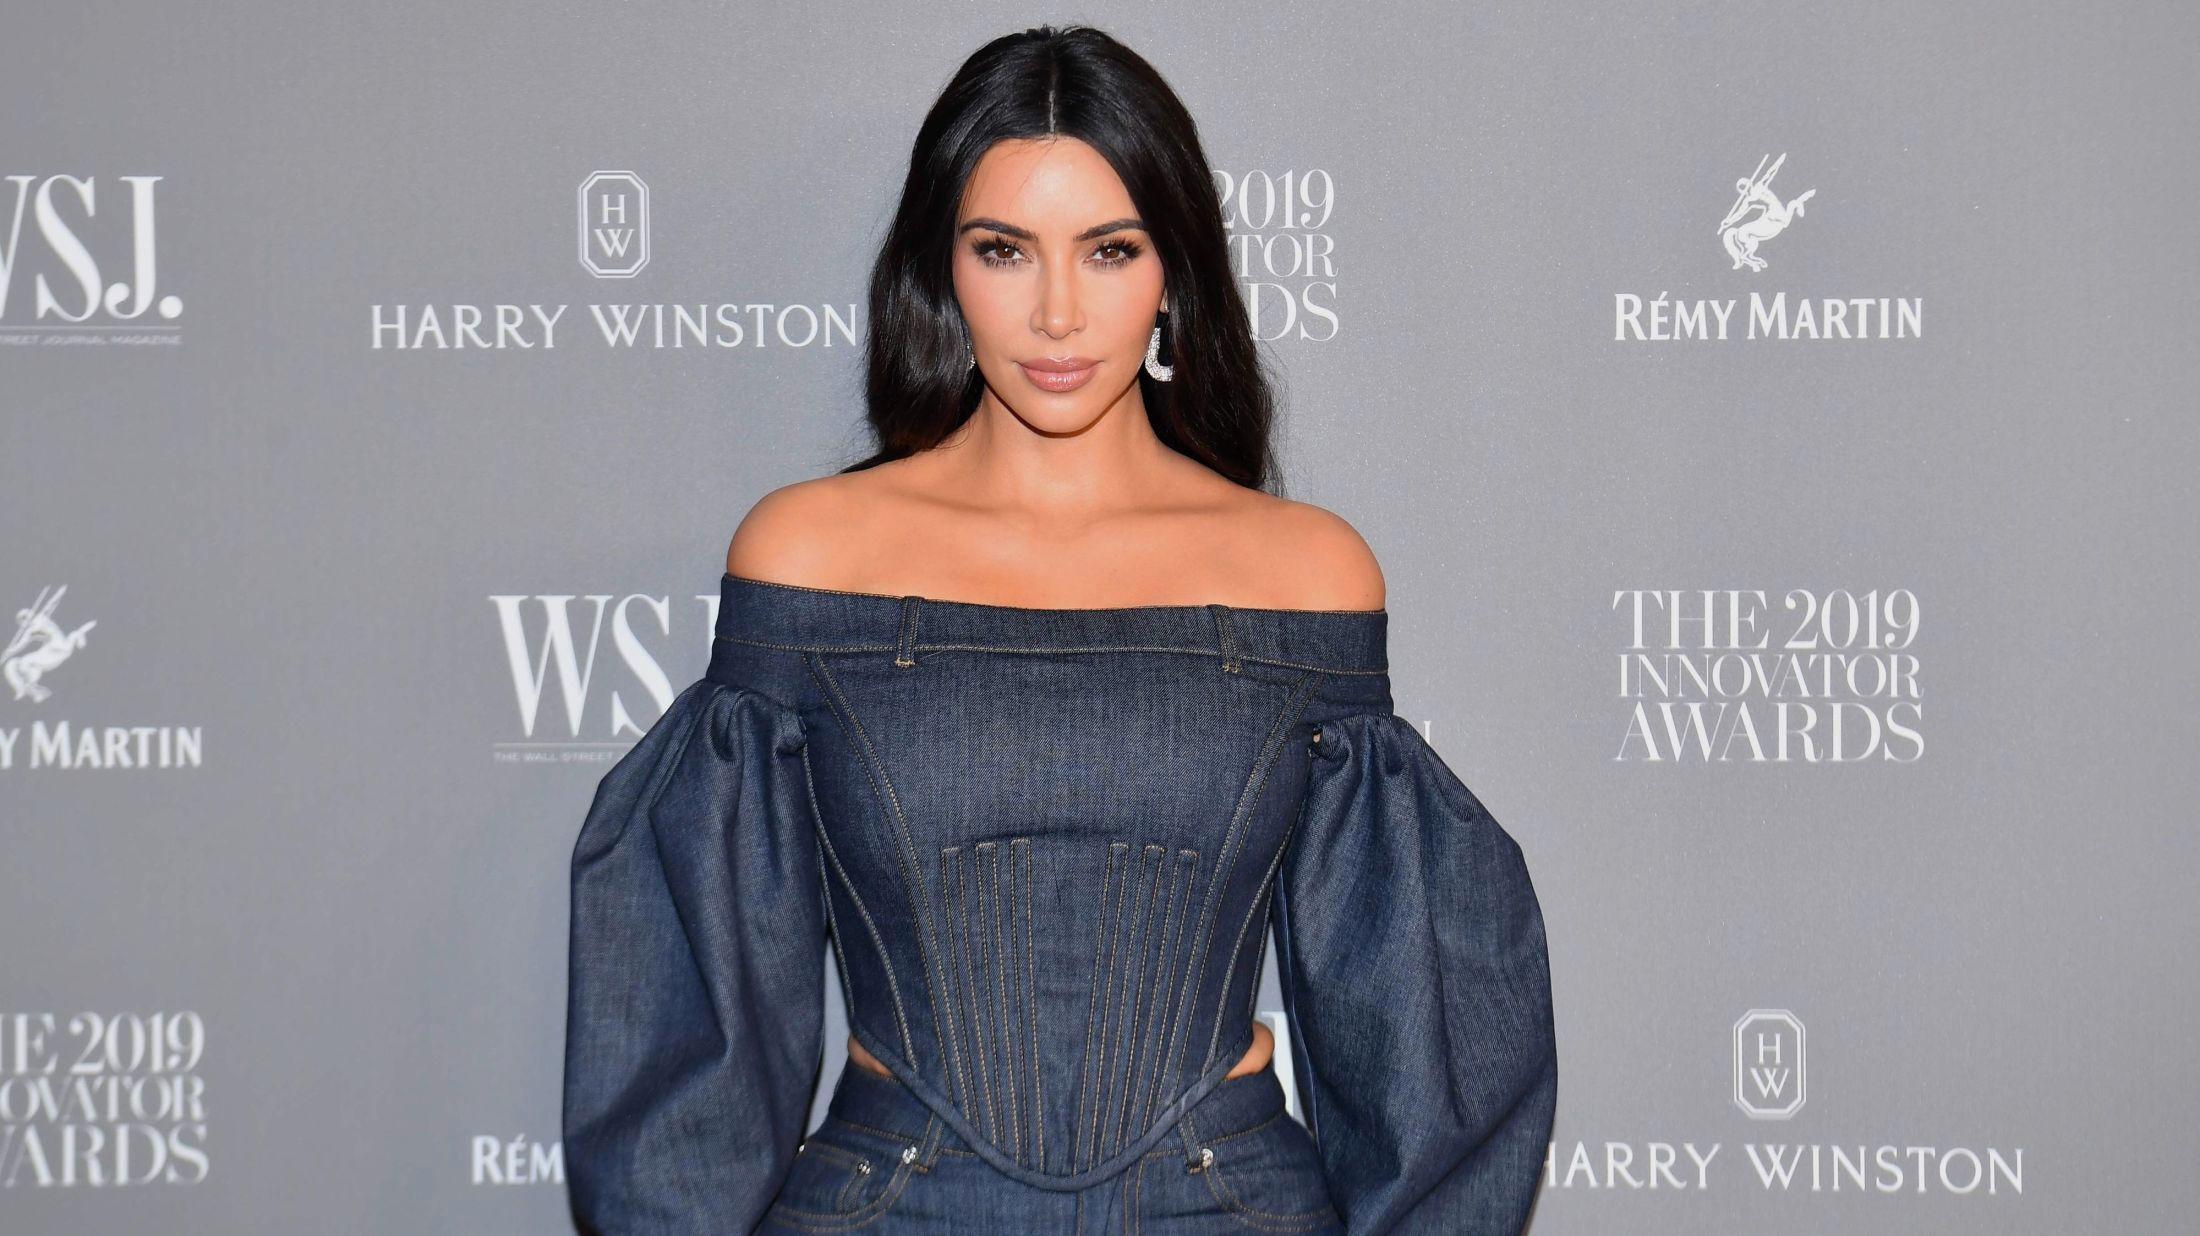 REALITYDRONNING: Kim Kardashian West er kjent både som realitystjerne og gründer av sitt eget sminke- og undertøysmerke. Foto: Angela Weiss / AFP